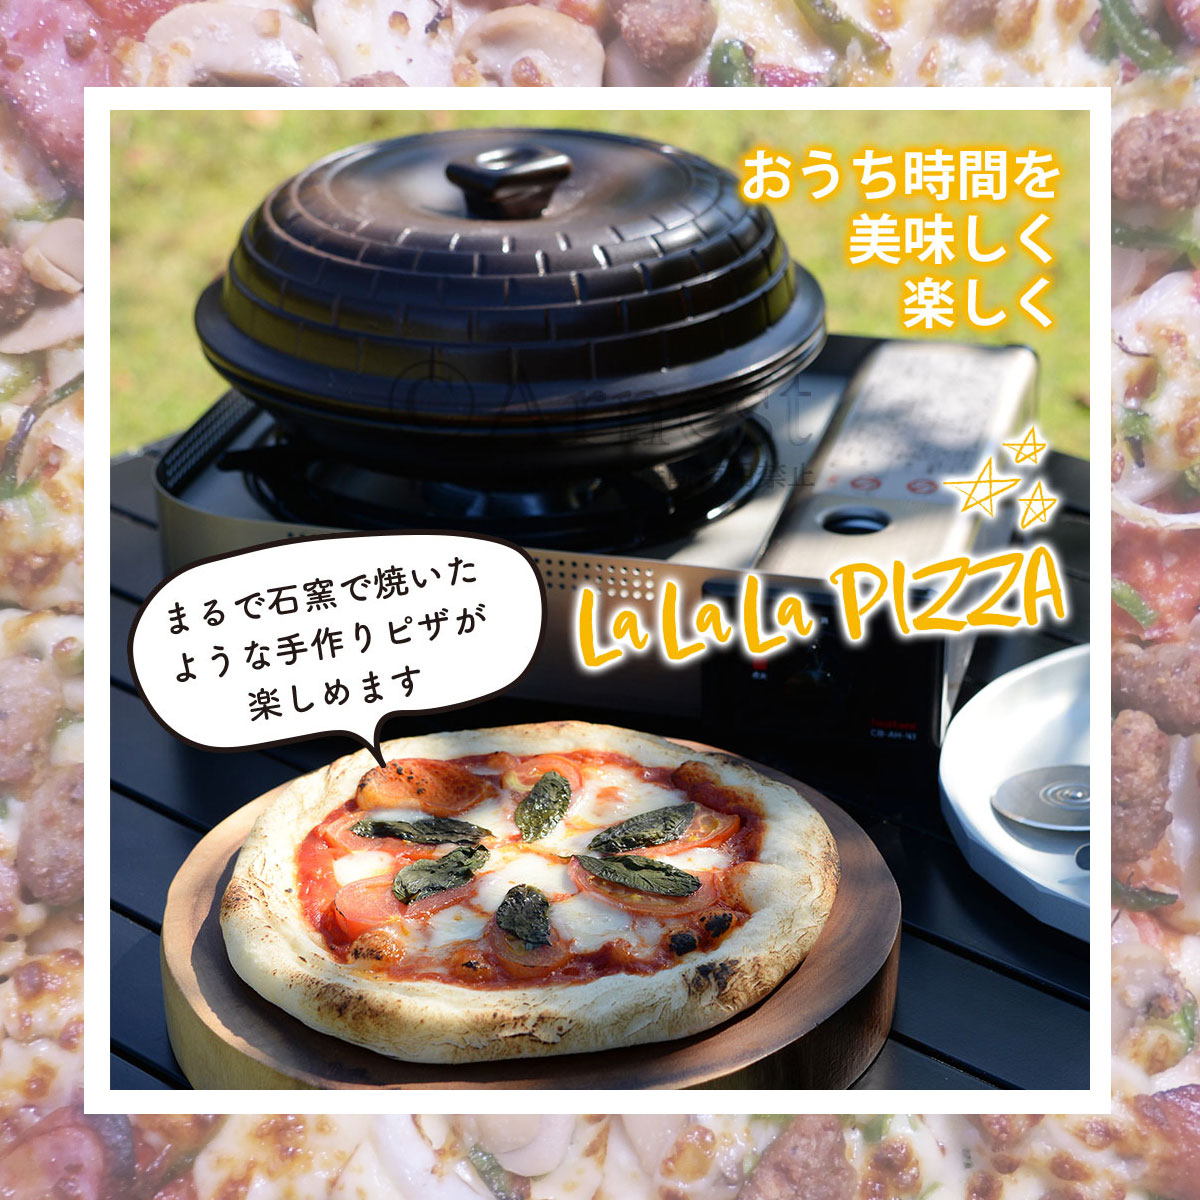 お家で本格ピザ LALALAピザ ピザ釜 桜チップ付 セラミック製 燻製